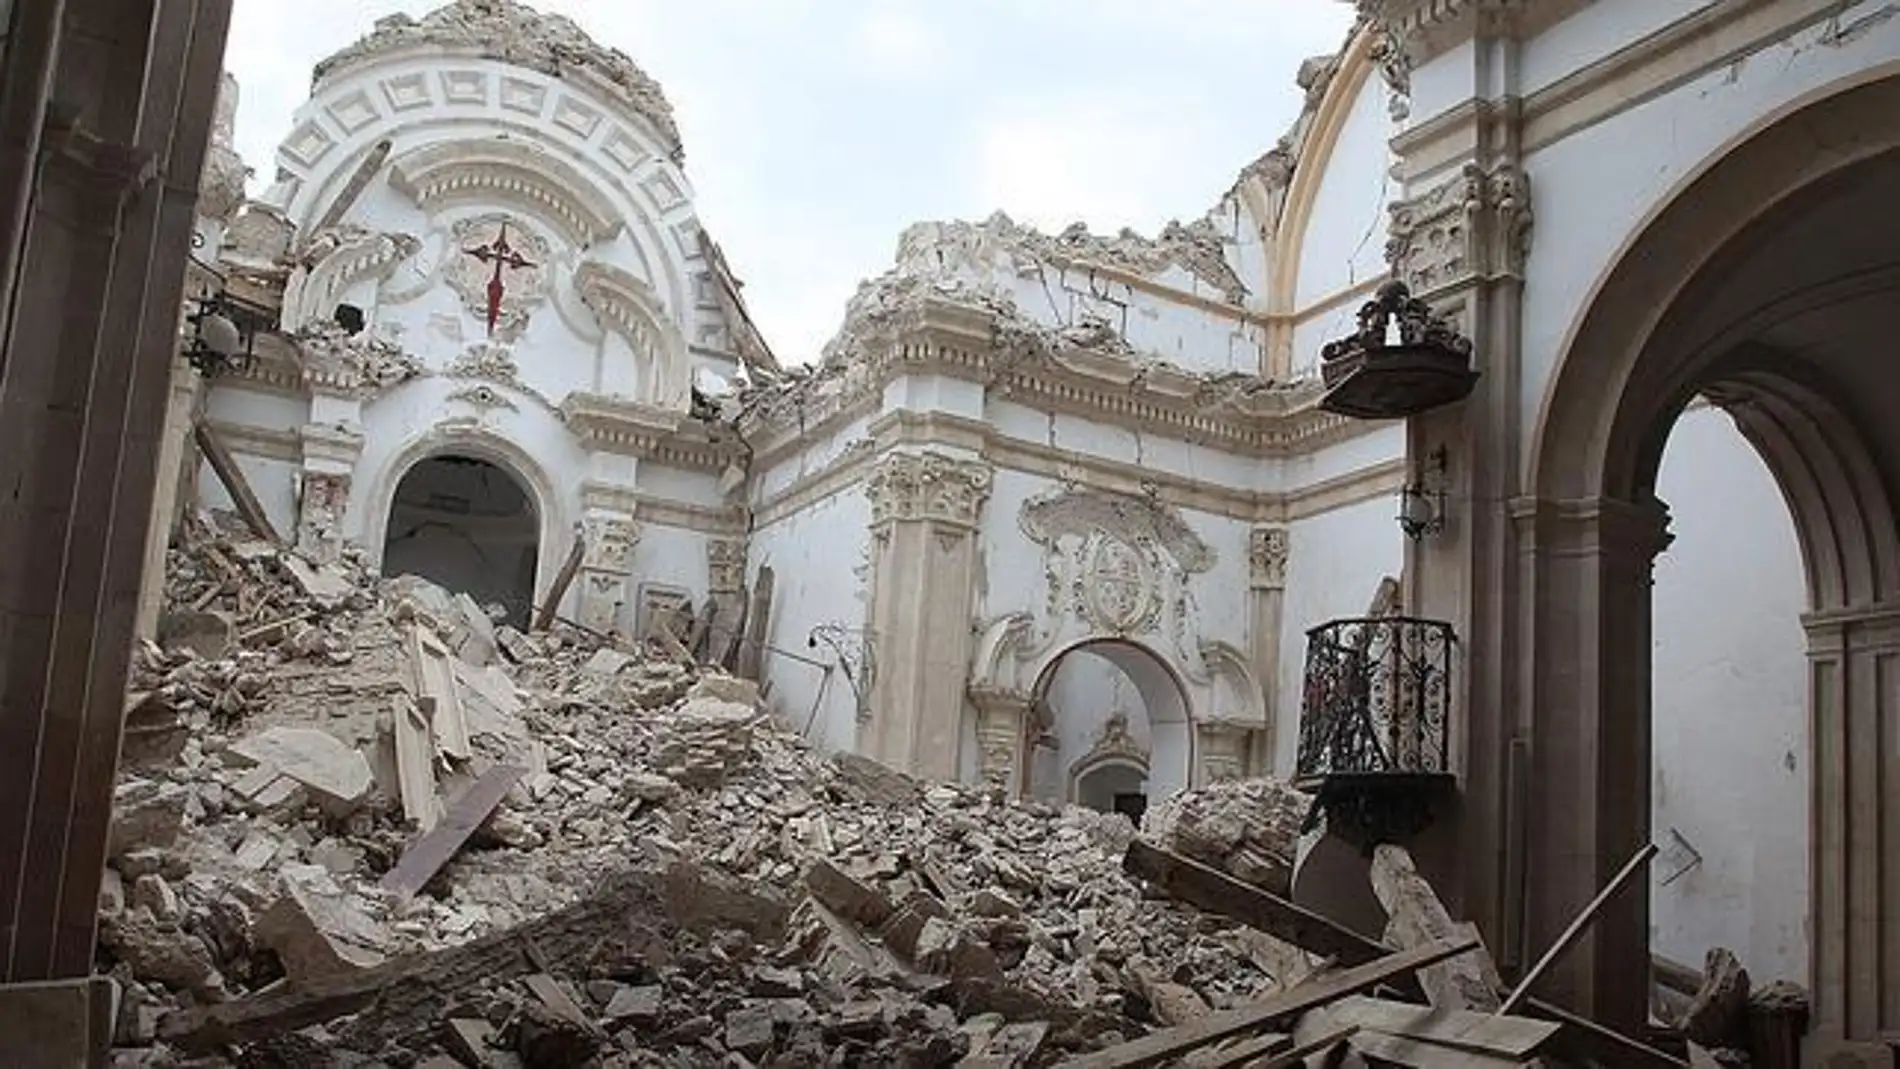 El terremoto de Lorca fue un sismo de magnitud 5.1 Mw (Magnitud de momento) el 11 de mayo de 2011 